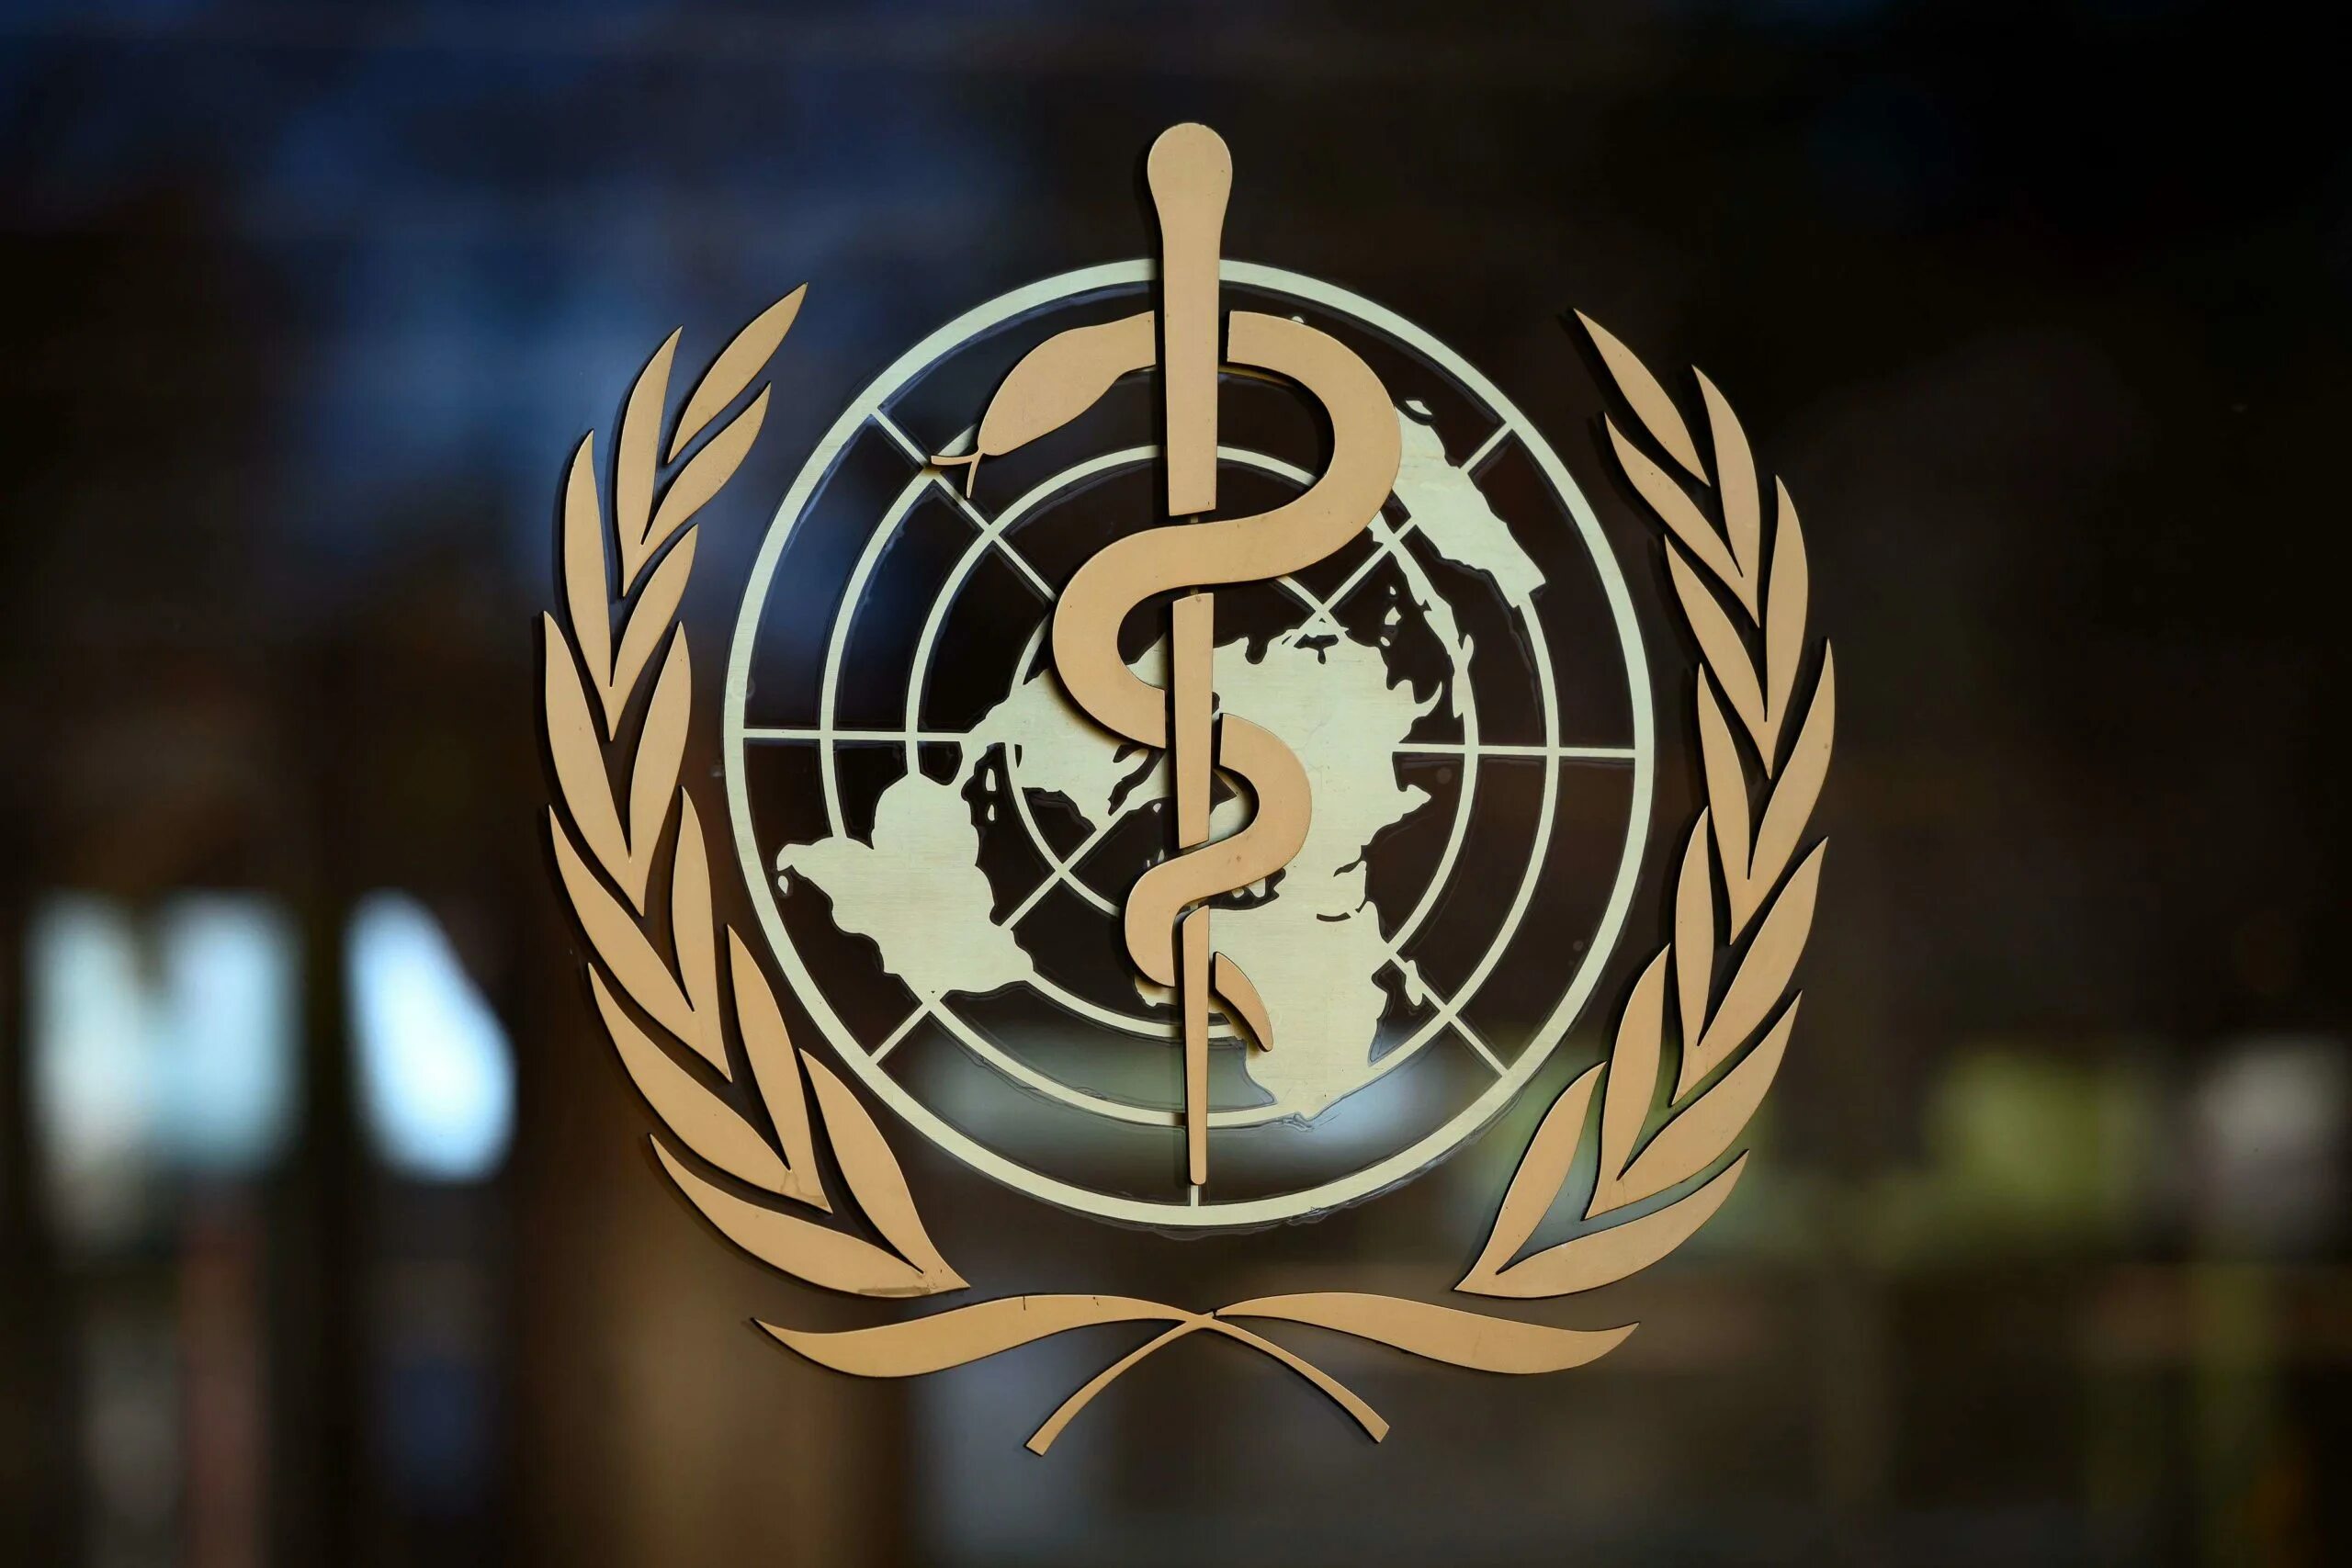 Всемирная организация здравоохранения ООН. Всемирная организация здравоохранения эмблема. Воз - Всемирная организация ООН. Эмблема воз всемирной организации здравоохранения.